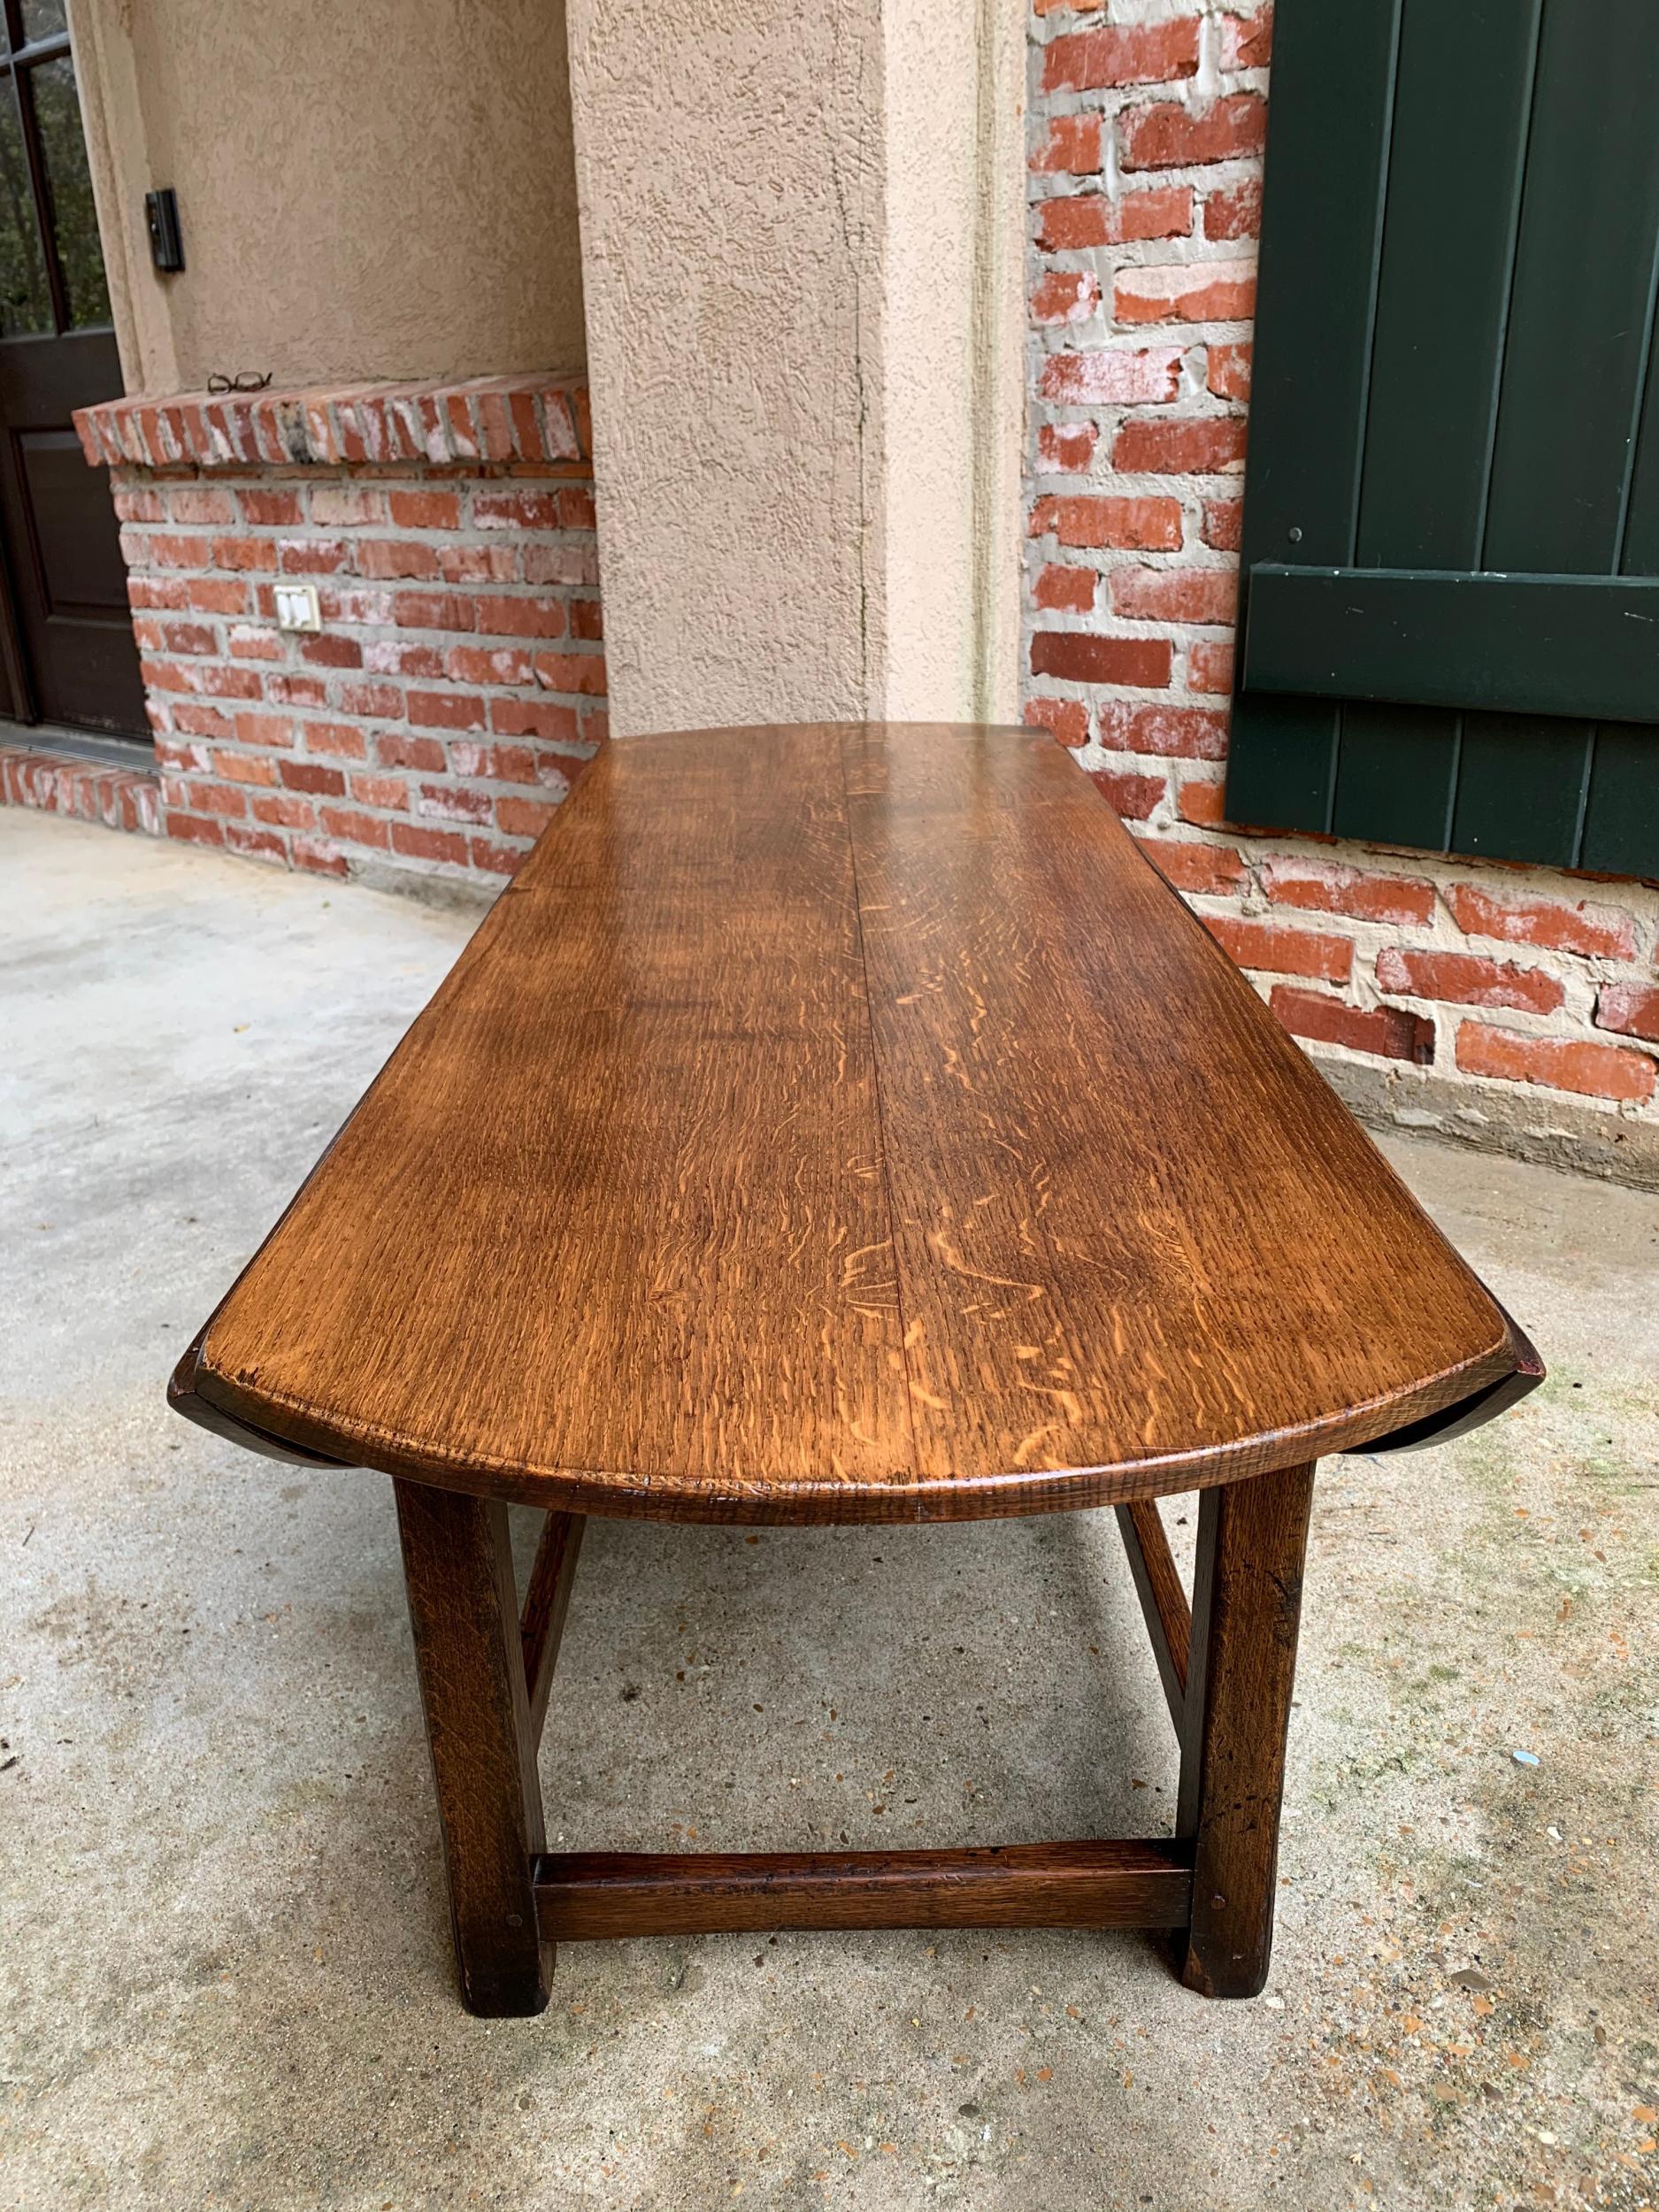 Oak Vintage English Coffee Table Slender Drop Leaf Wake Table Oval Mid Century